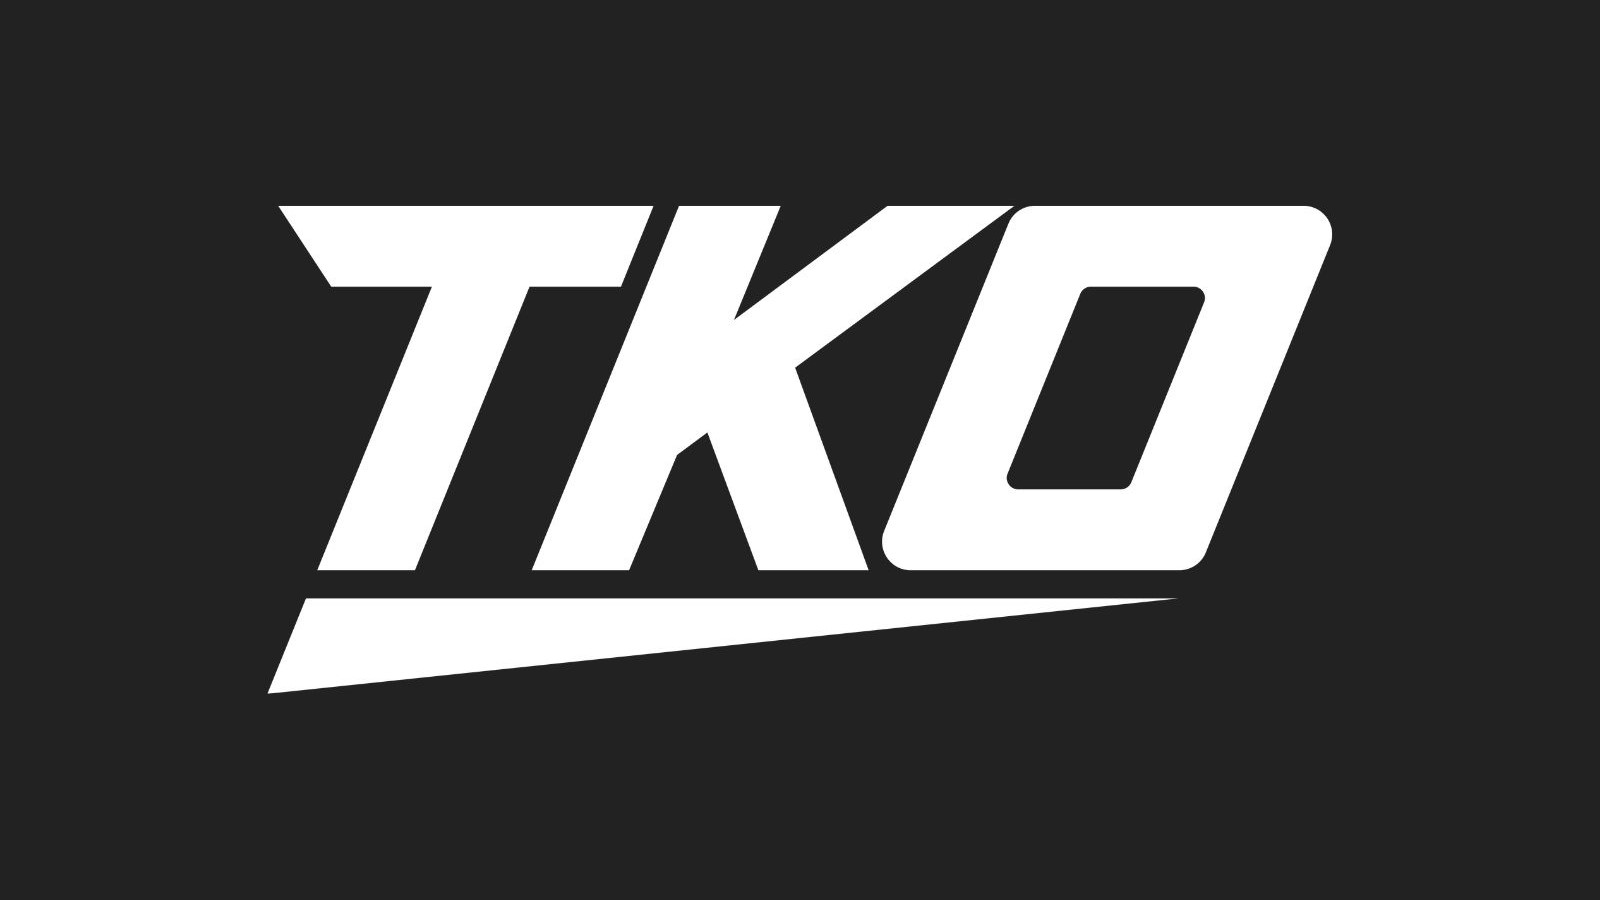 TKO fusionne les départements live events de la WWE et de l'UFC.